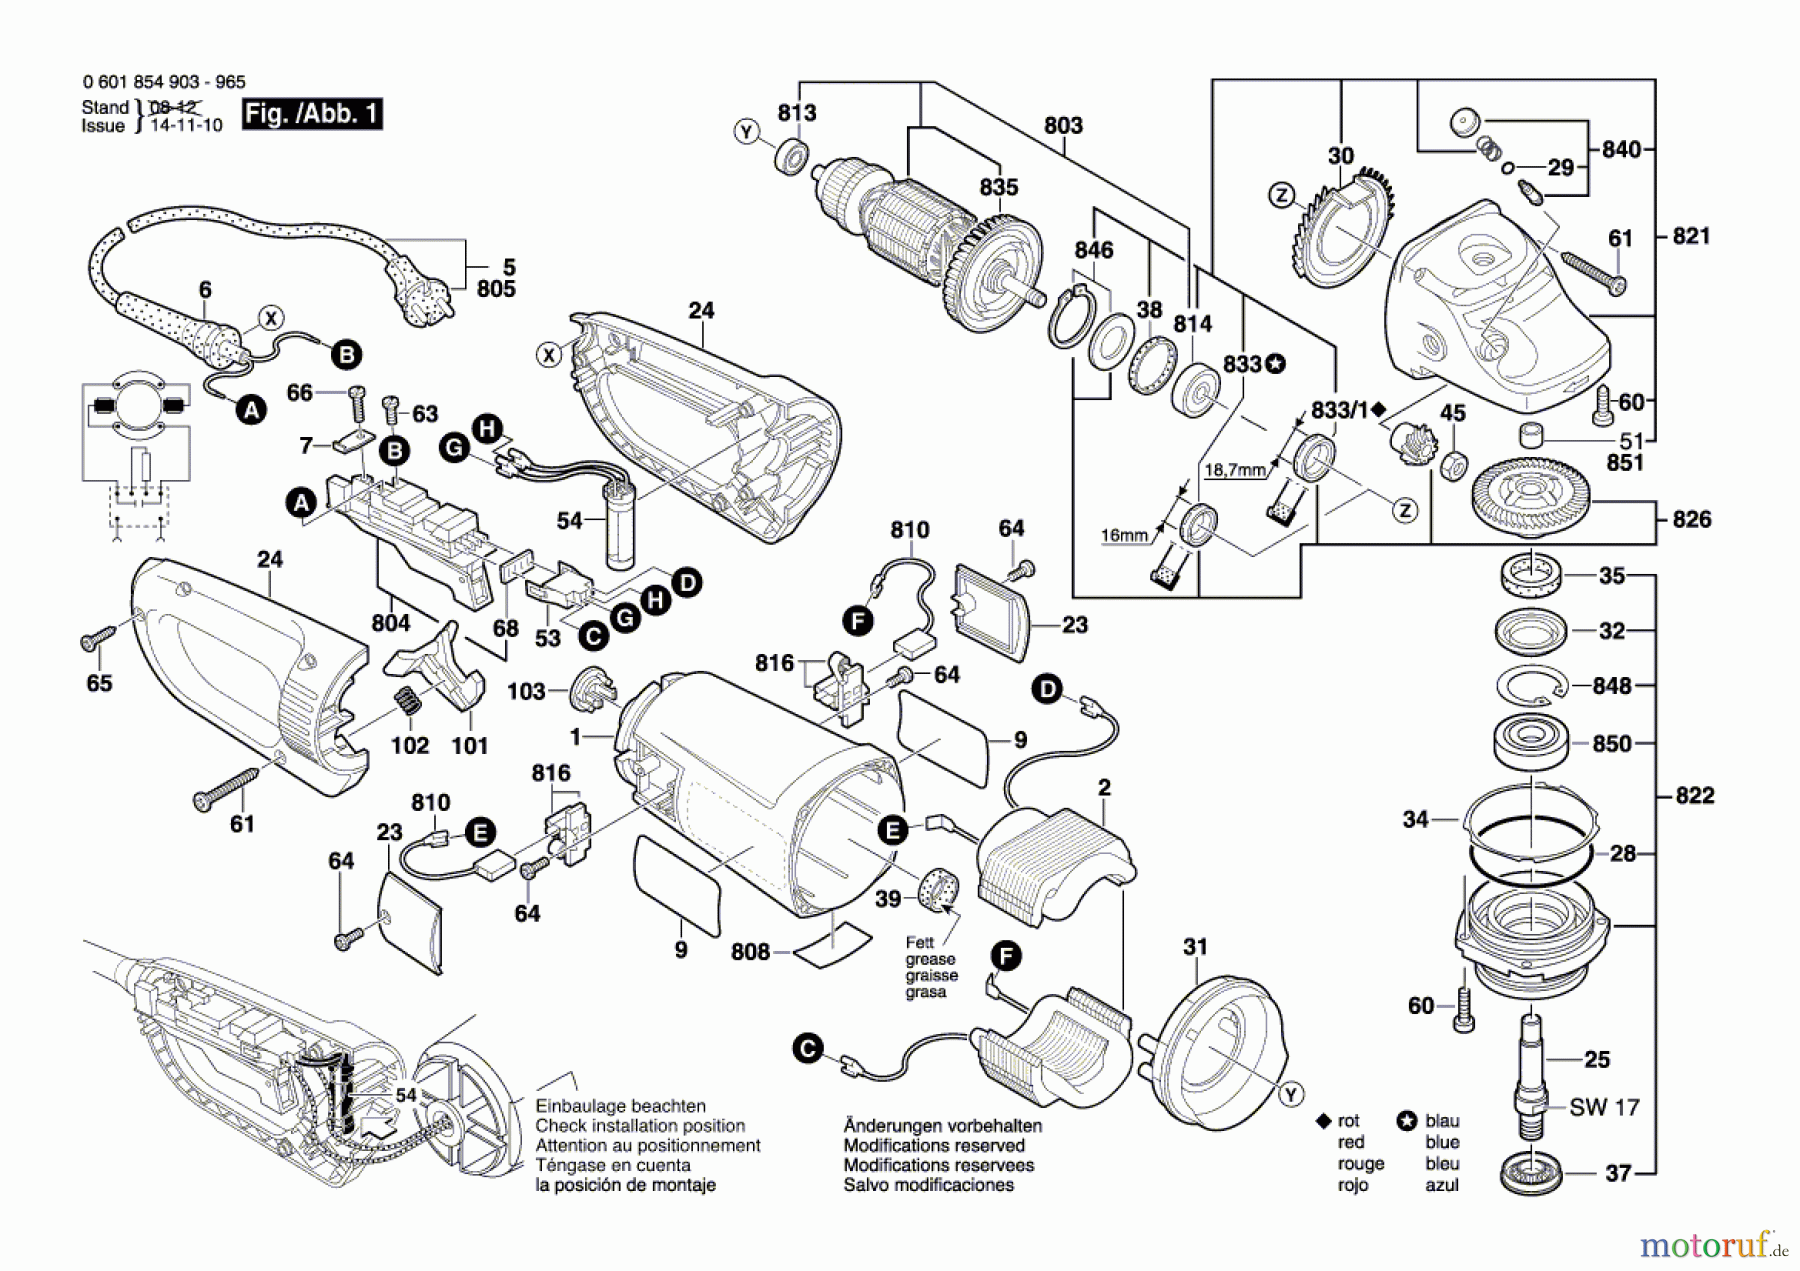  Bosch Werkzeug Winkelschleifer GWS 24-230 JB Seite 1